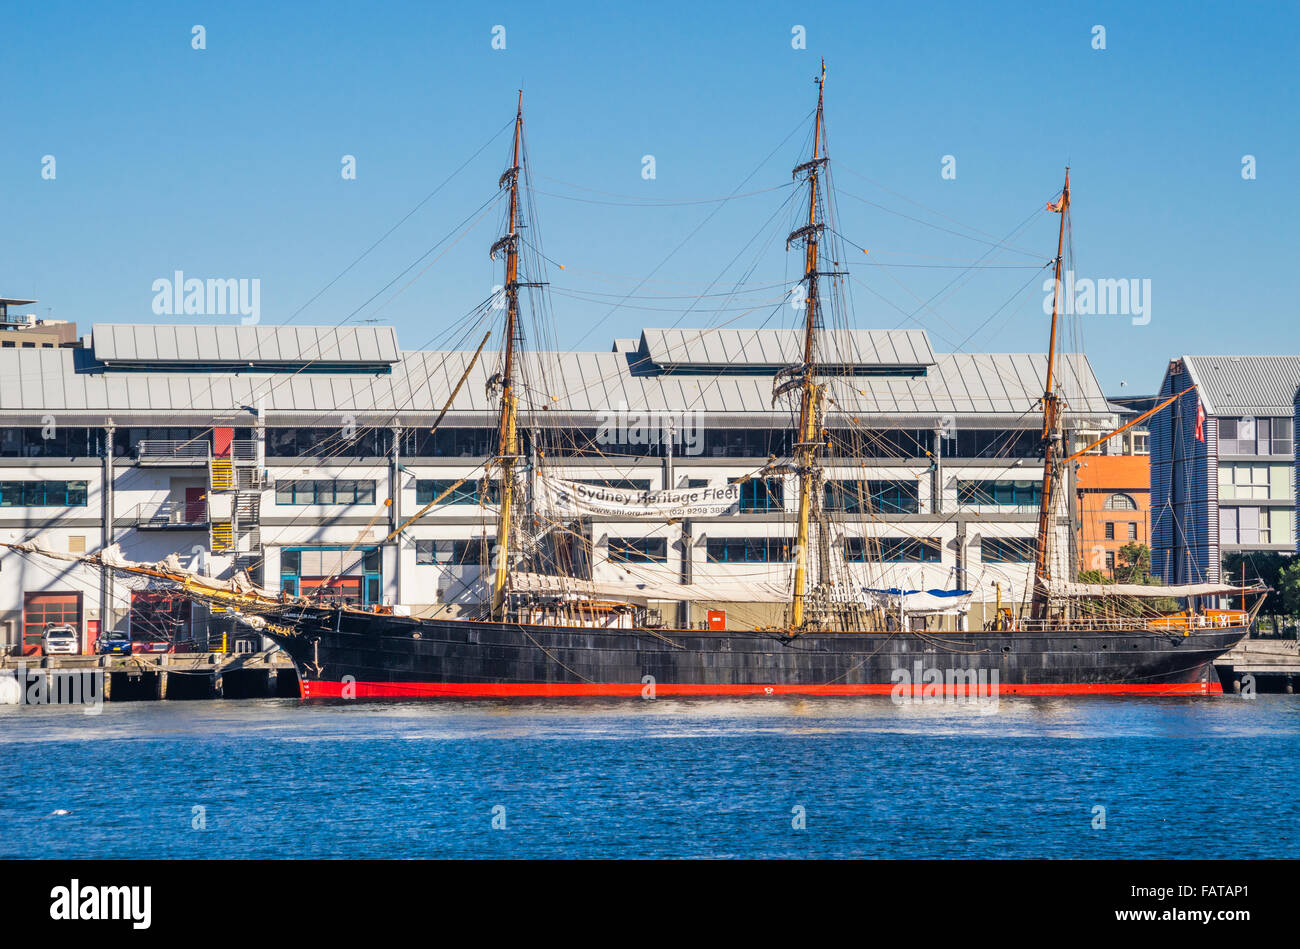 L'Australie, New South Wales, Sydney, Darling Harbour, trois-mâts barque à coque de fer James Craig de la flotte du patrimoine de Sydney Banque D'Images